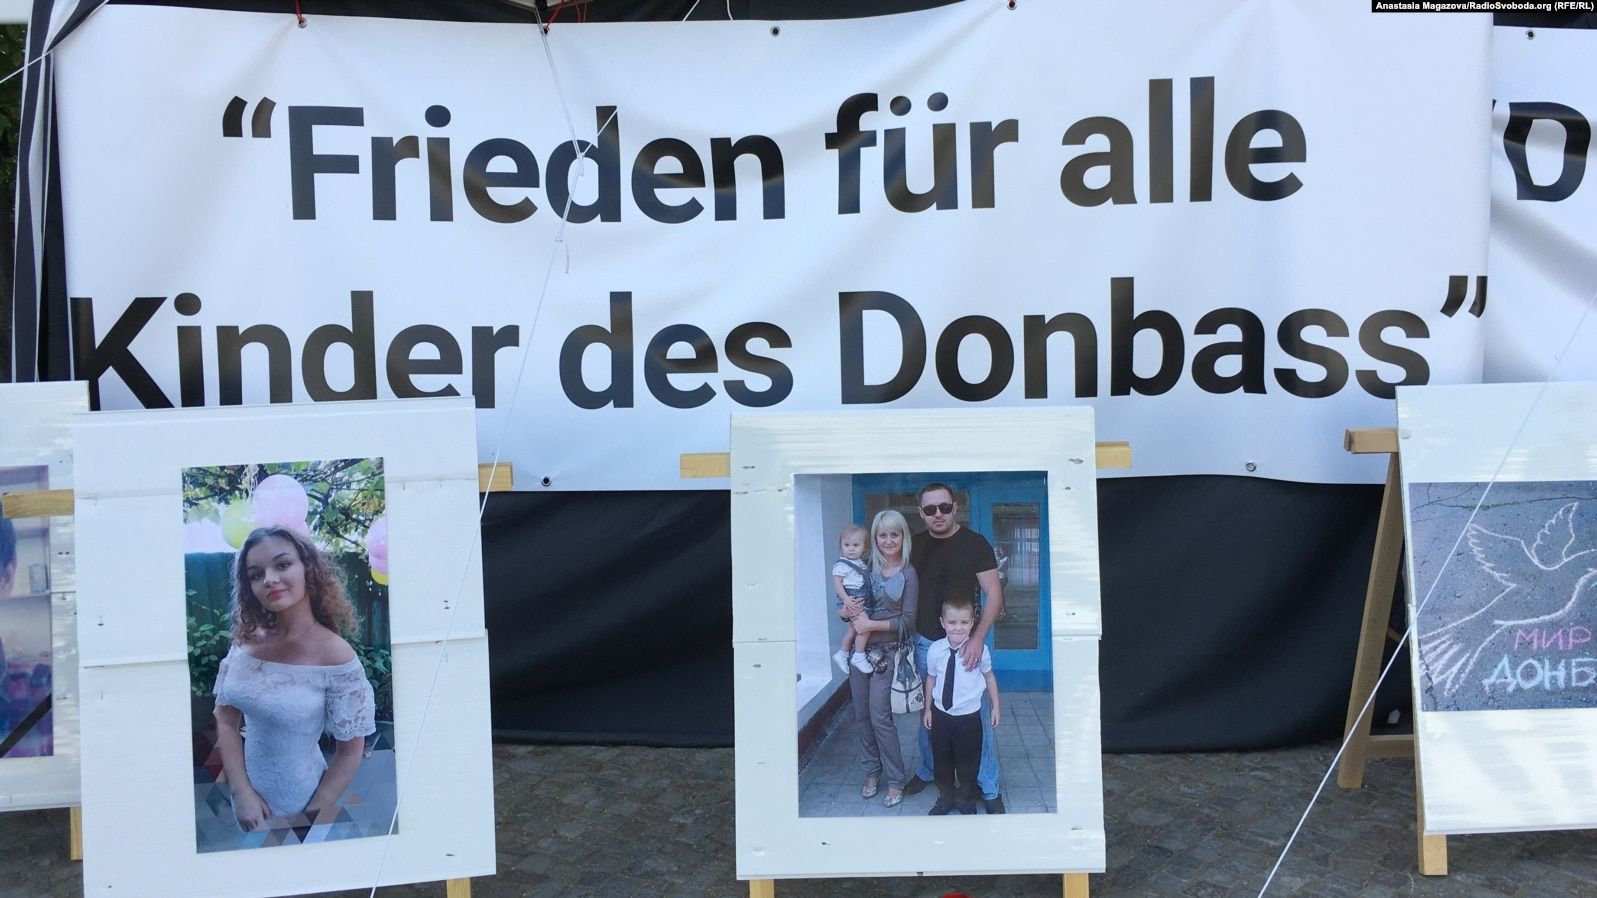 «Детей Донбасса убила украинская армия»: пропаганда Кремля обманывает европейцев прямо в центре Берлина